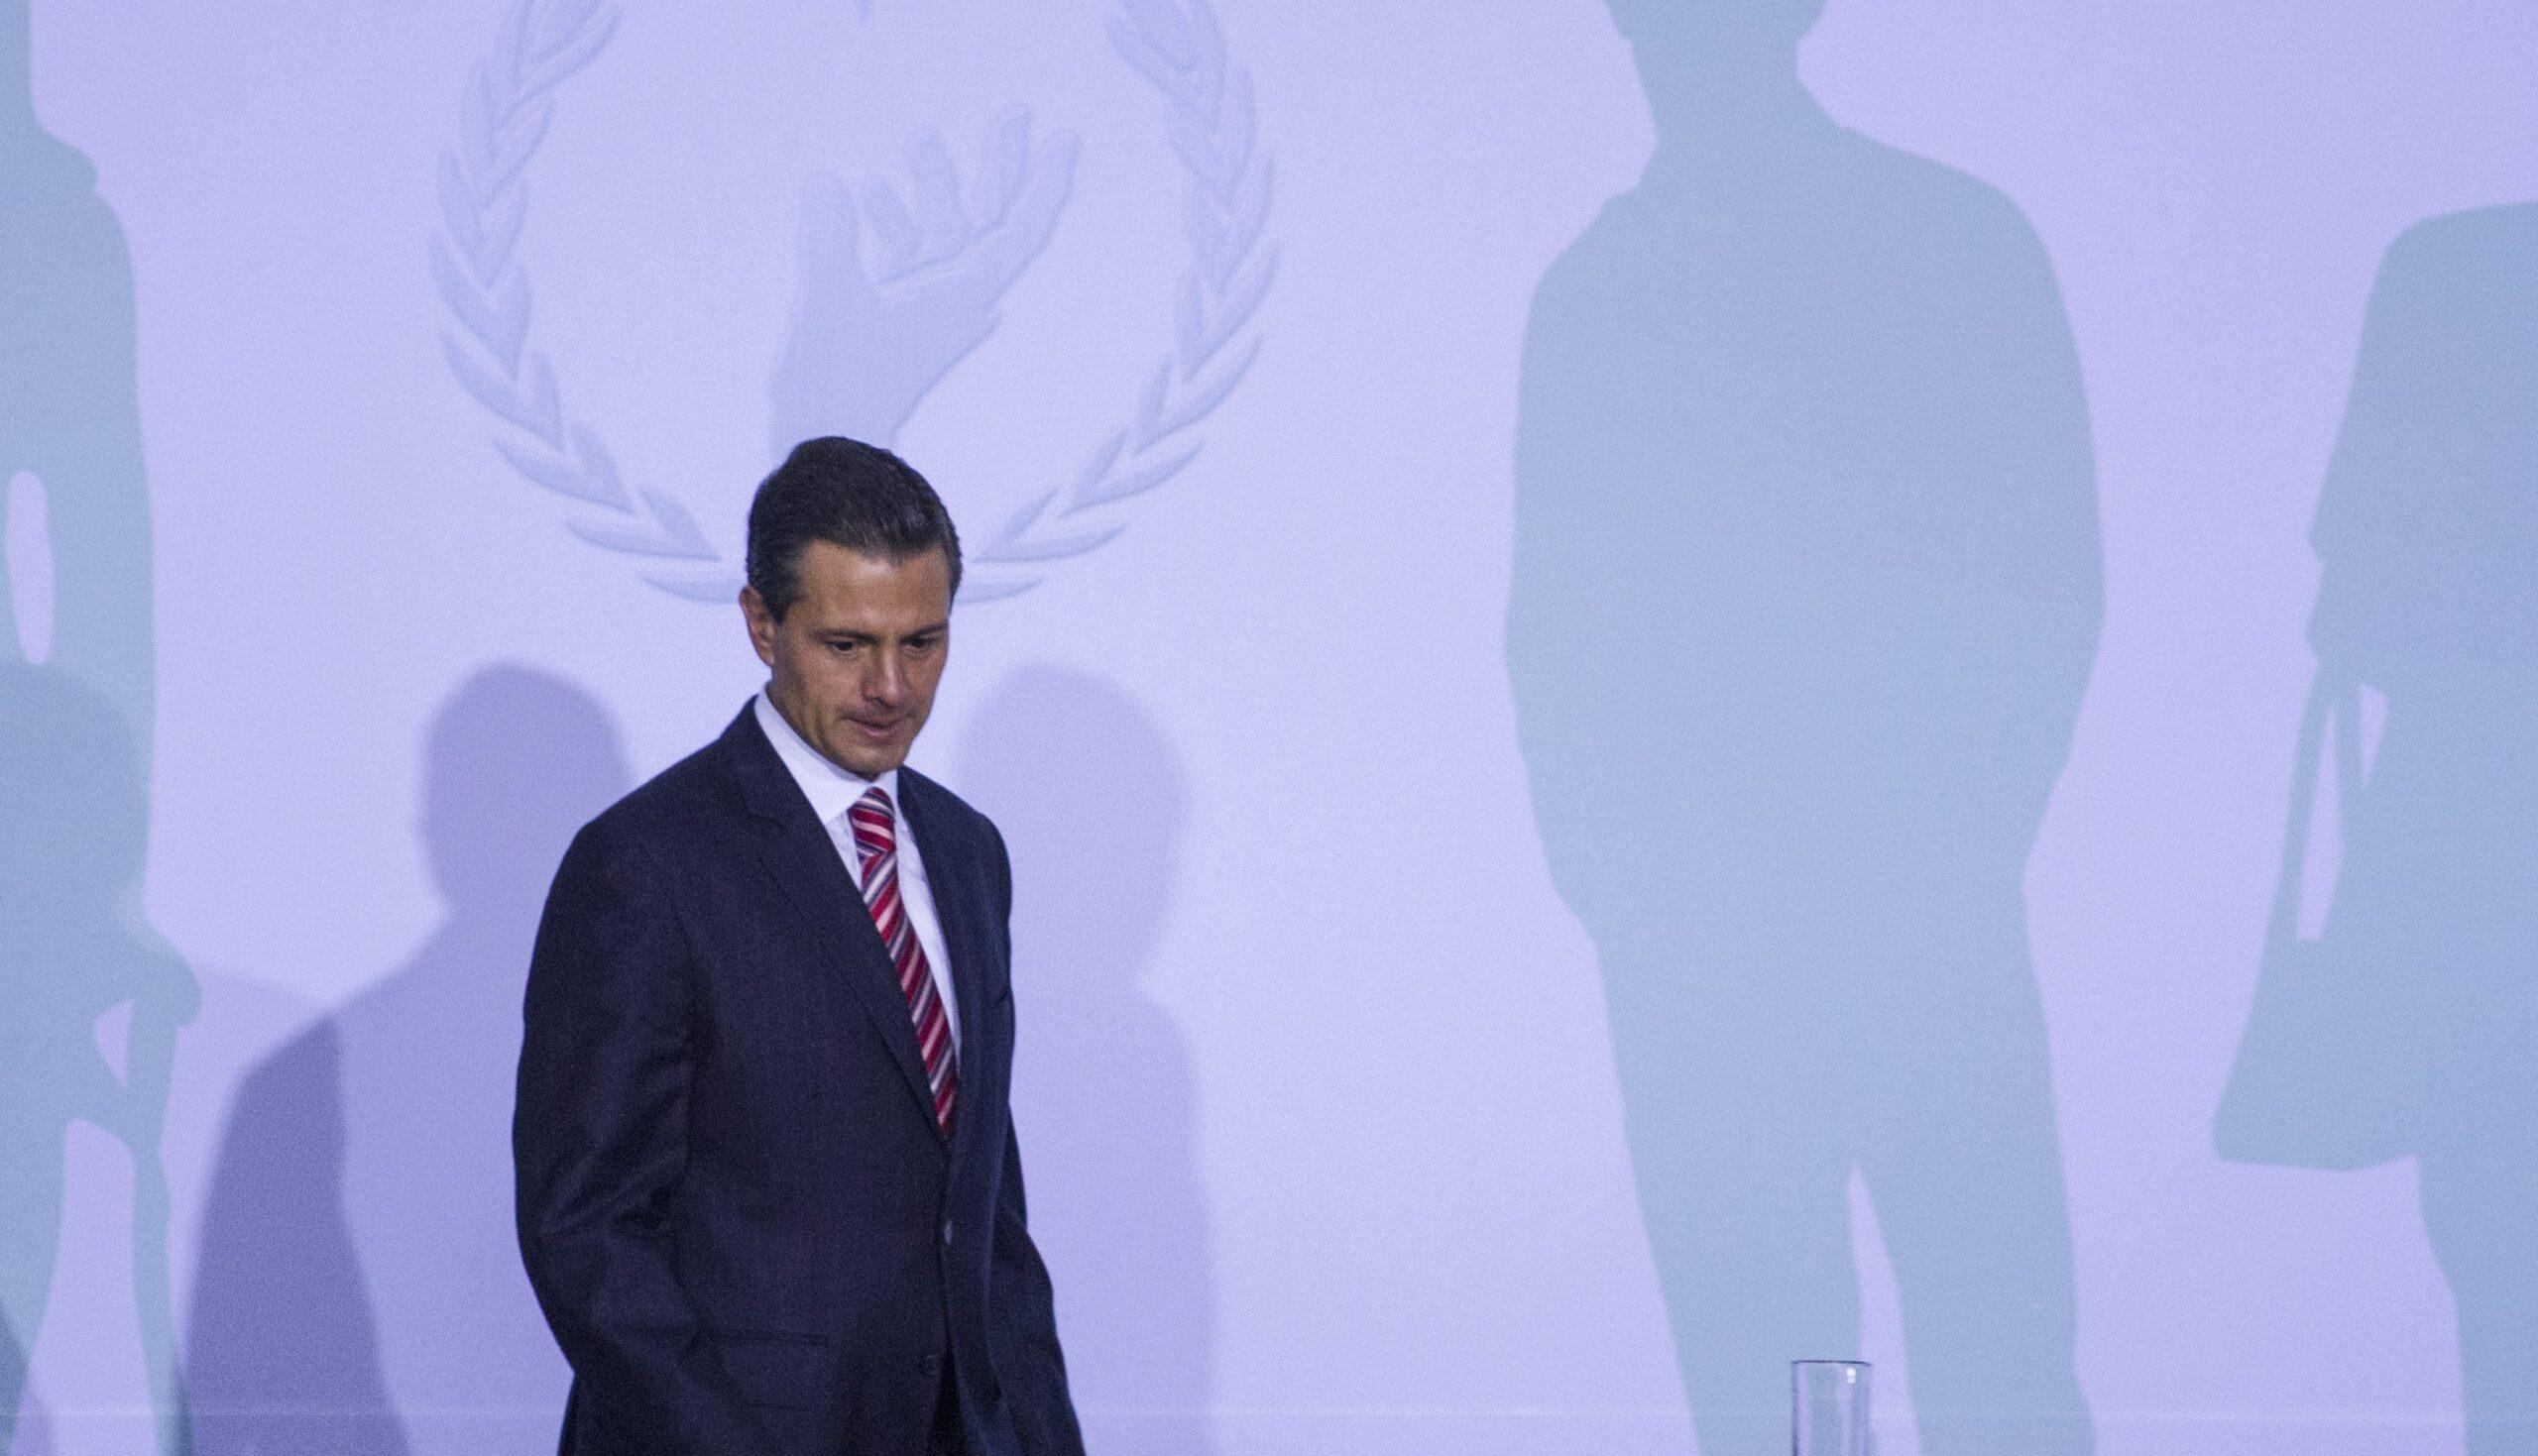 Seguridad y salud, los derechos humanos más vulnerados durante el sexenio de Peña Nieto